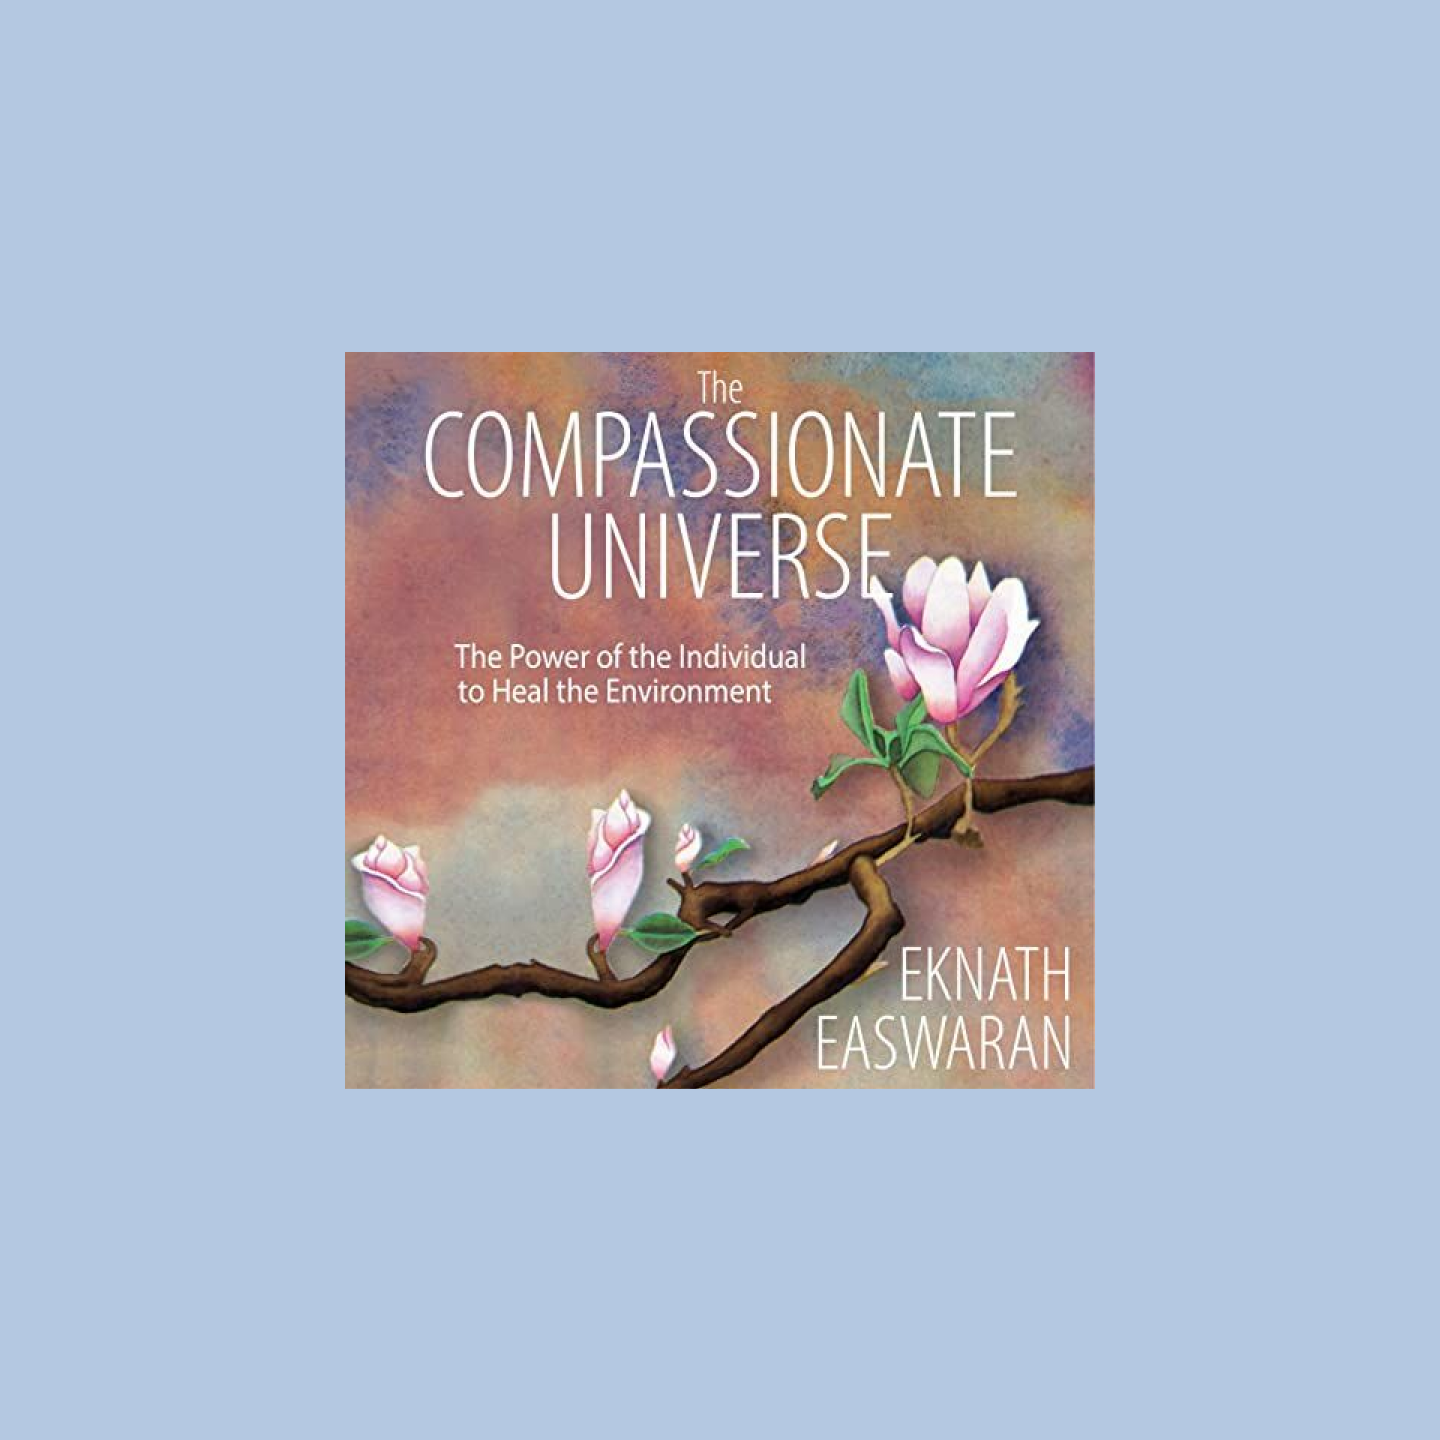 Couverture de livre audio portant le titre The Compassionate Universe avec une illustration de cerisier